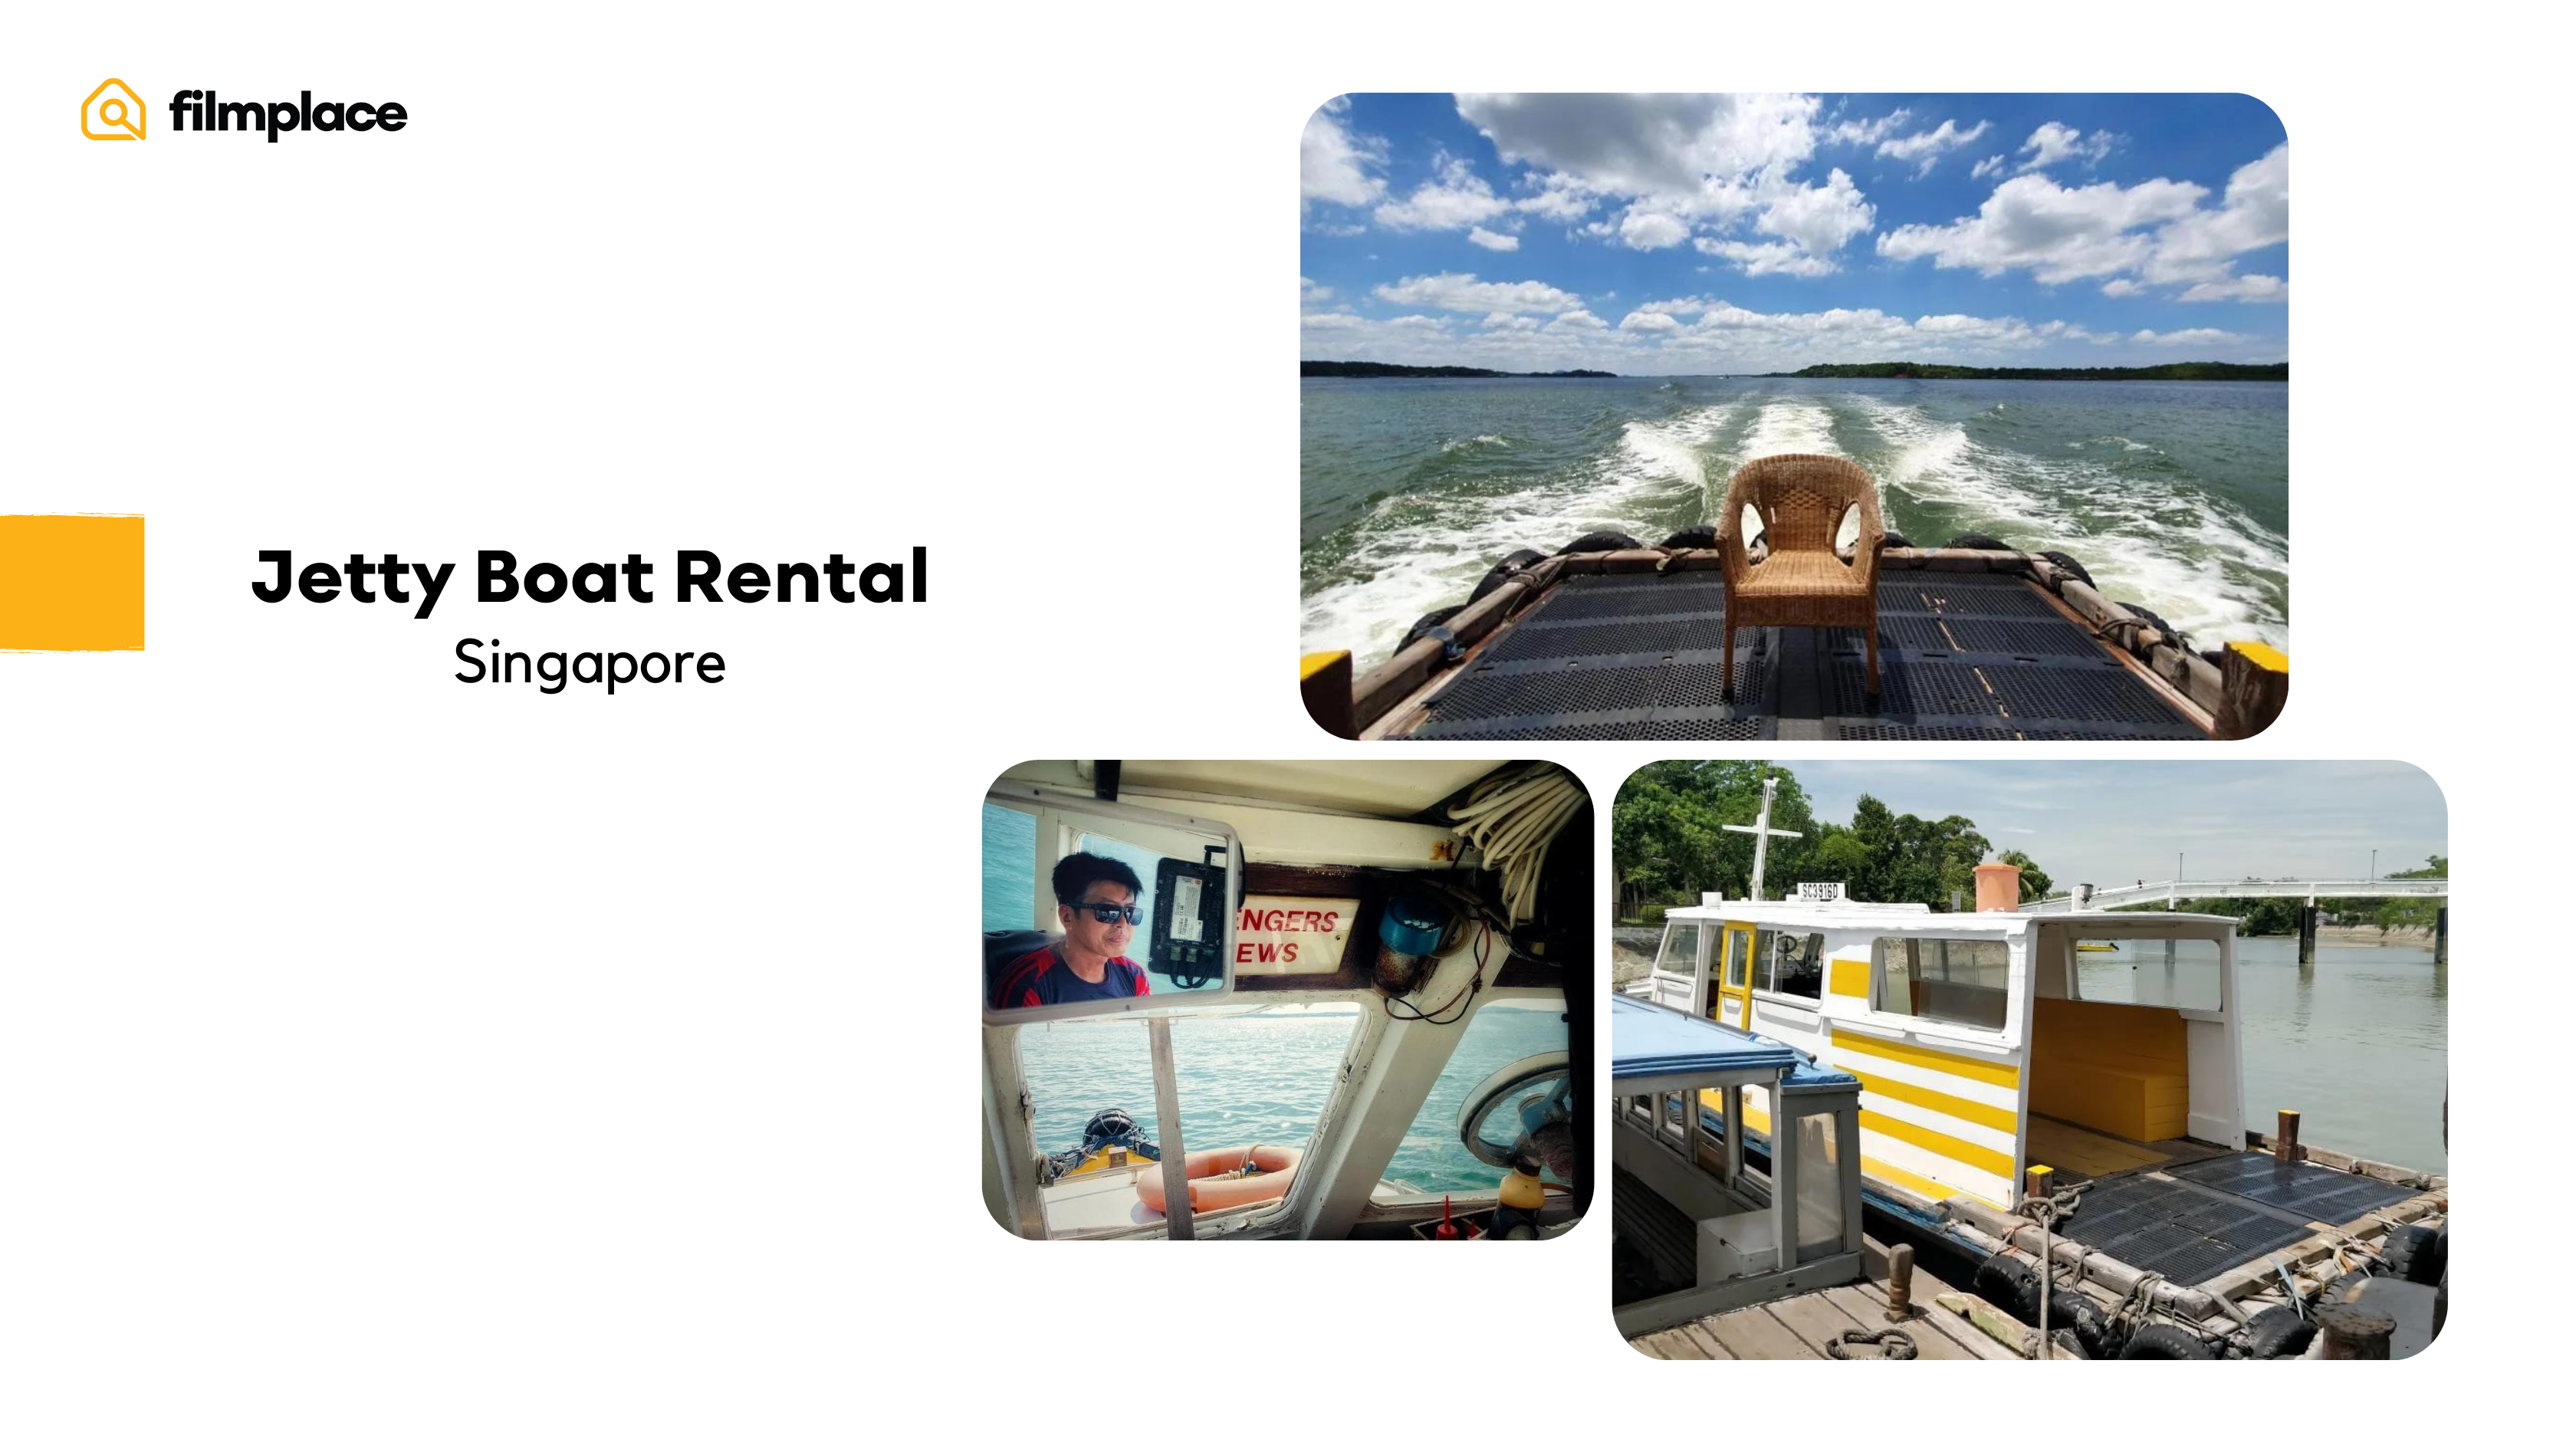 Filmplace 4위 영화 촬영지 선정 4월: 싱가포르 사진 콜라주에 10030 Jetty Boat Rental 등록